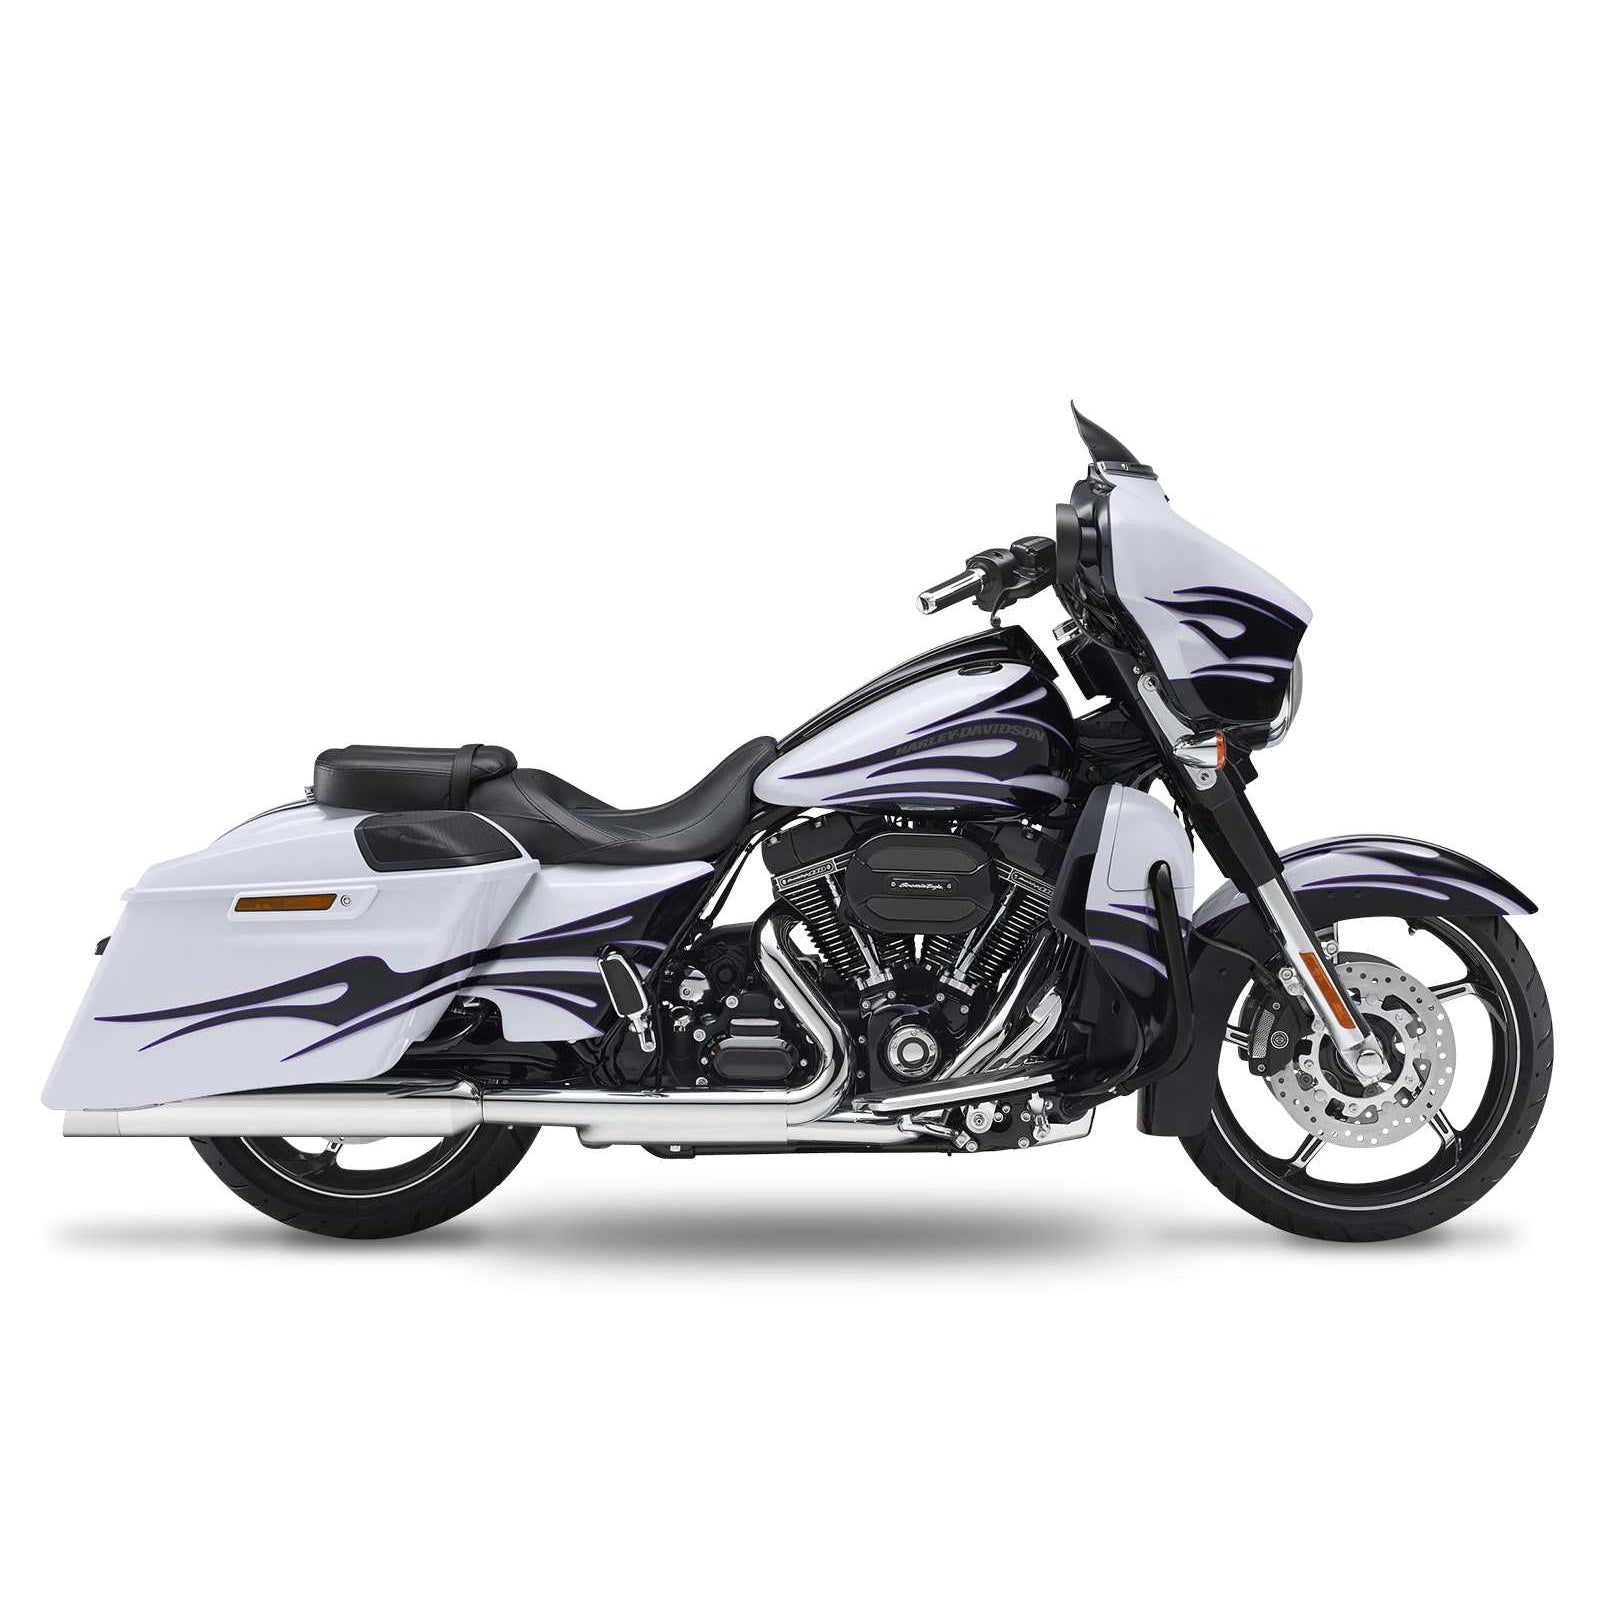 Кesstech 2018 Harley-Davidson Road Glide Special Pro-Line Slipons adjustable